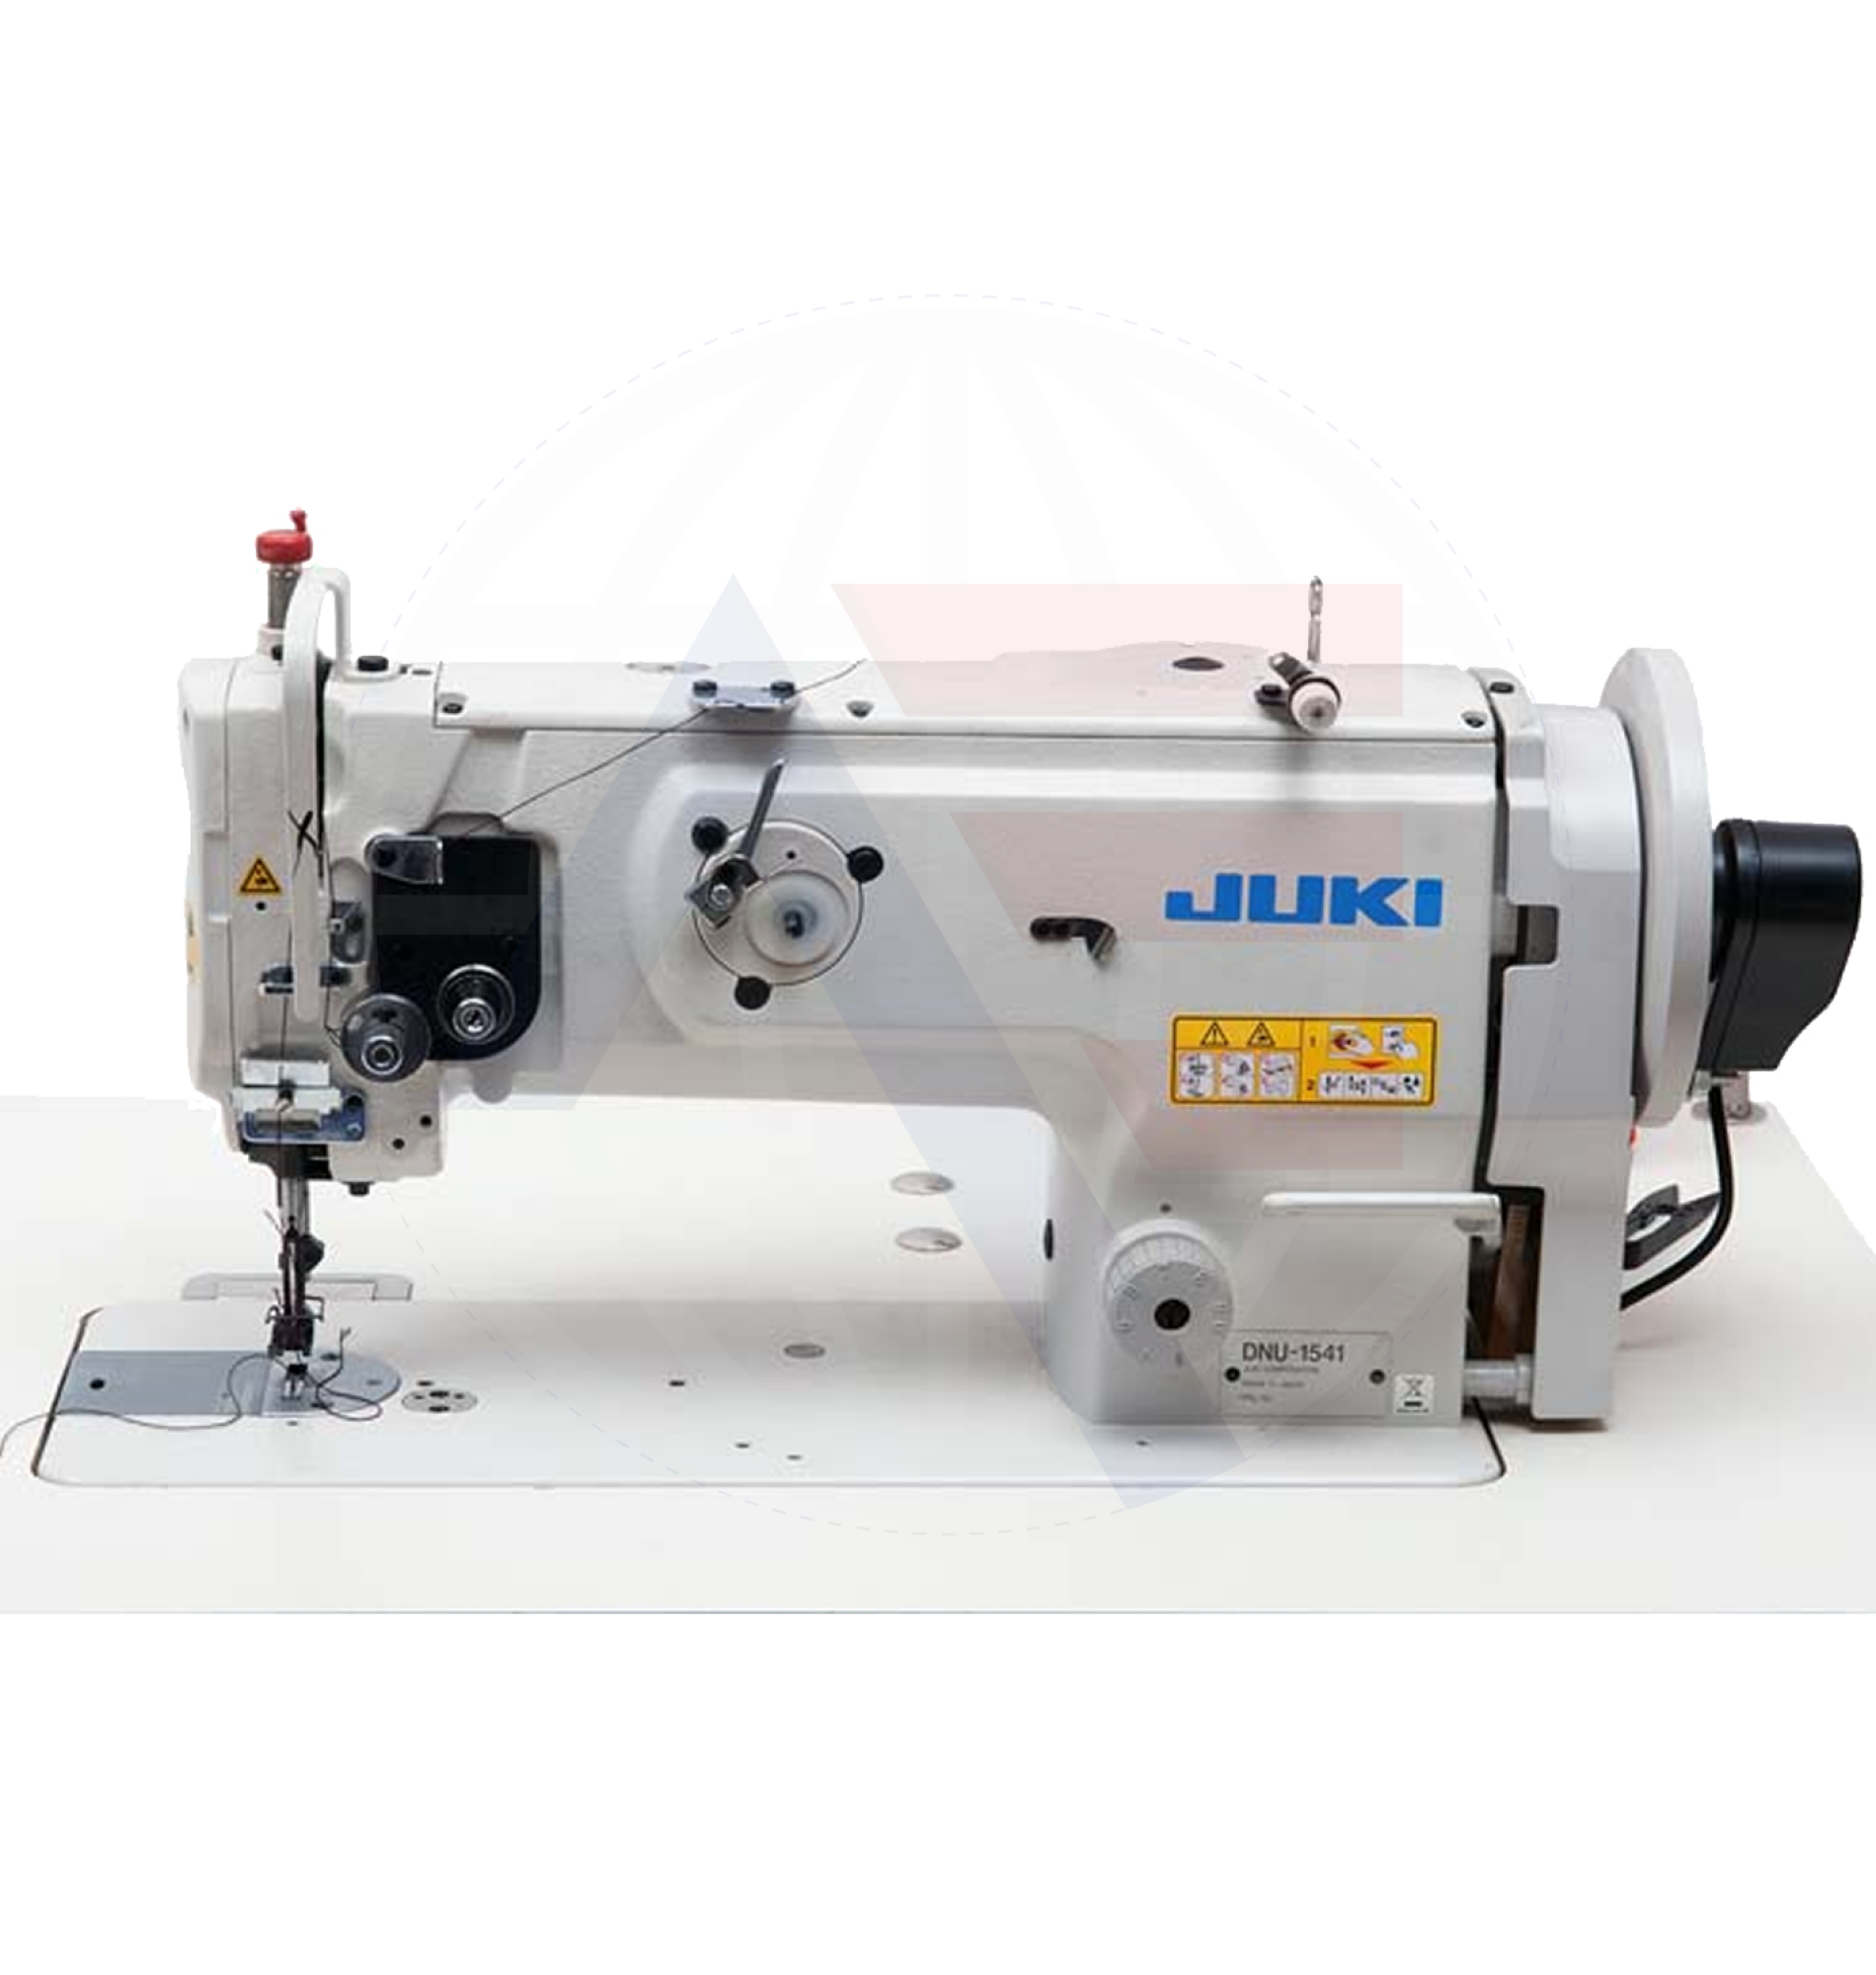 Juki Dnu-1541 1-Needle Walking-Foot Machine Sewing Machines